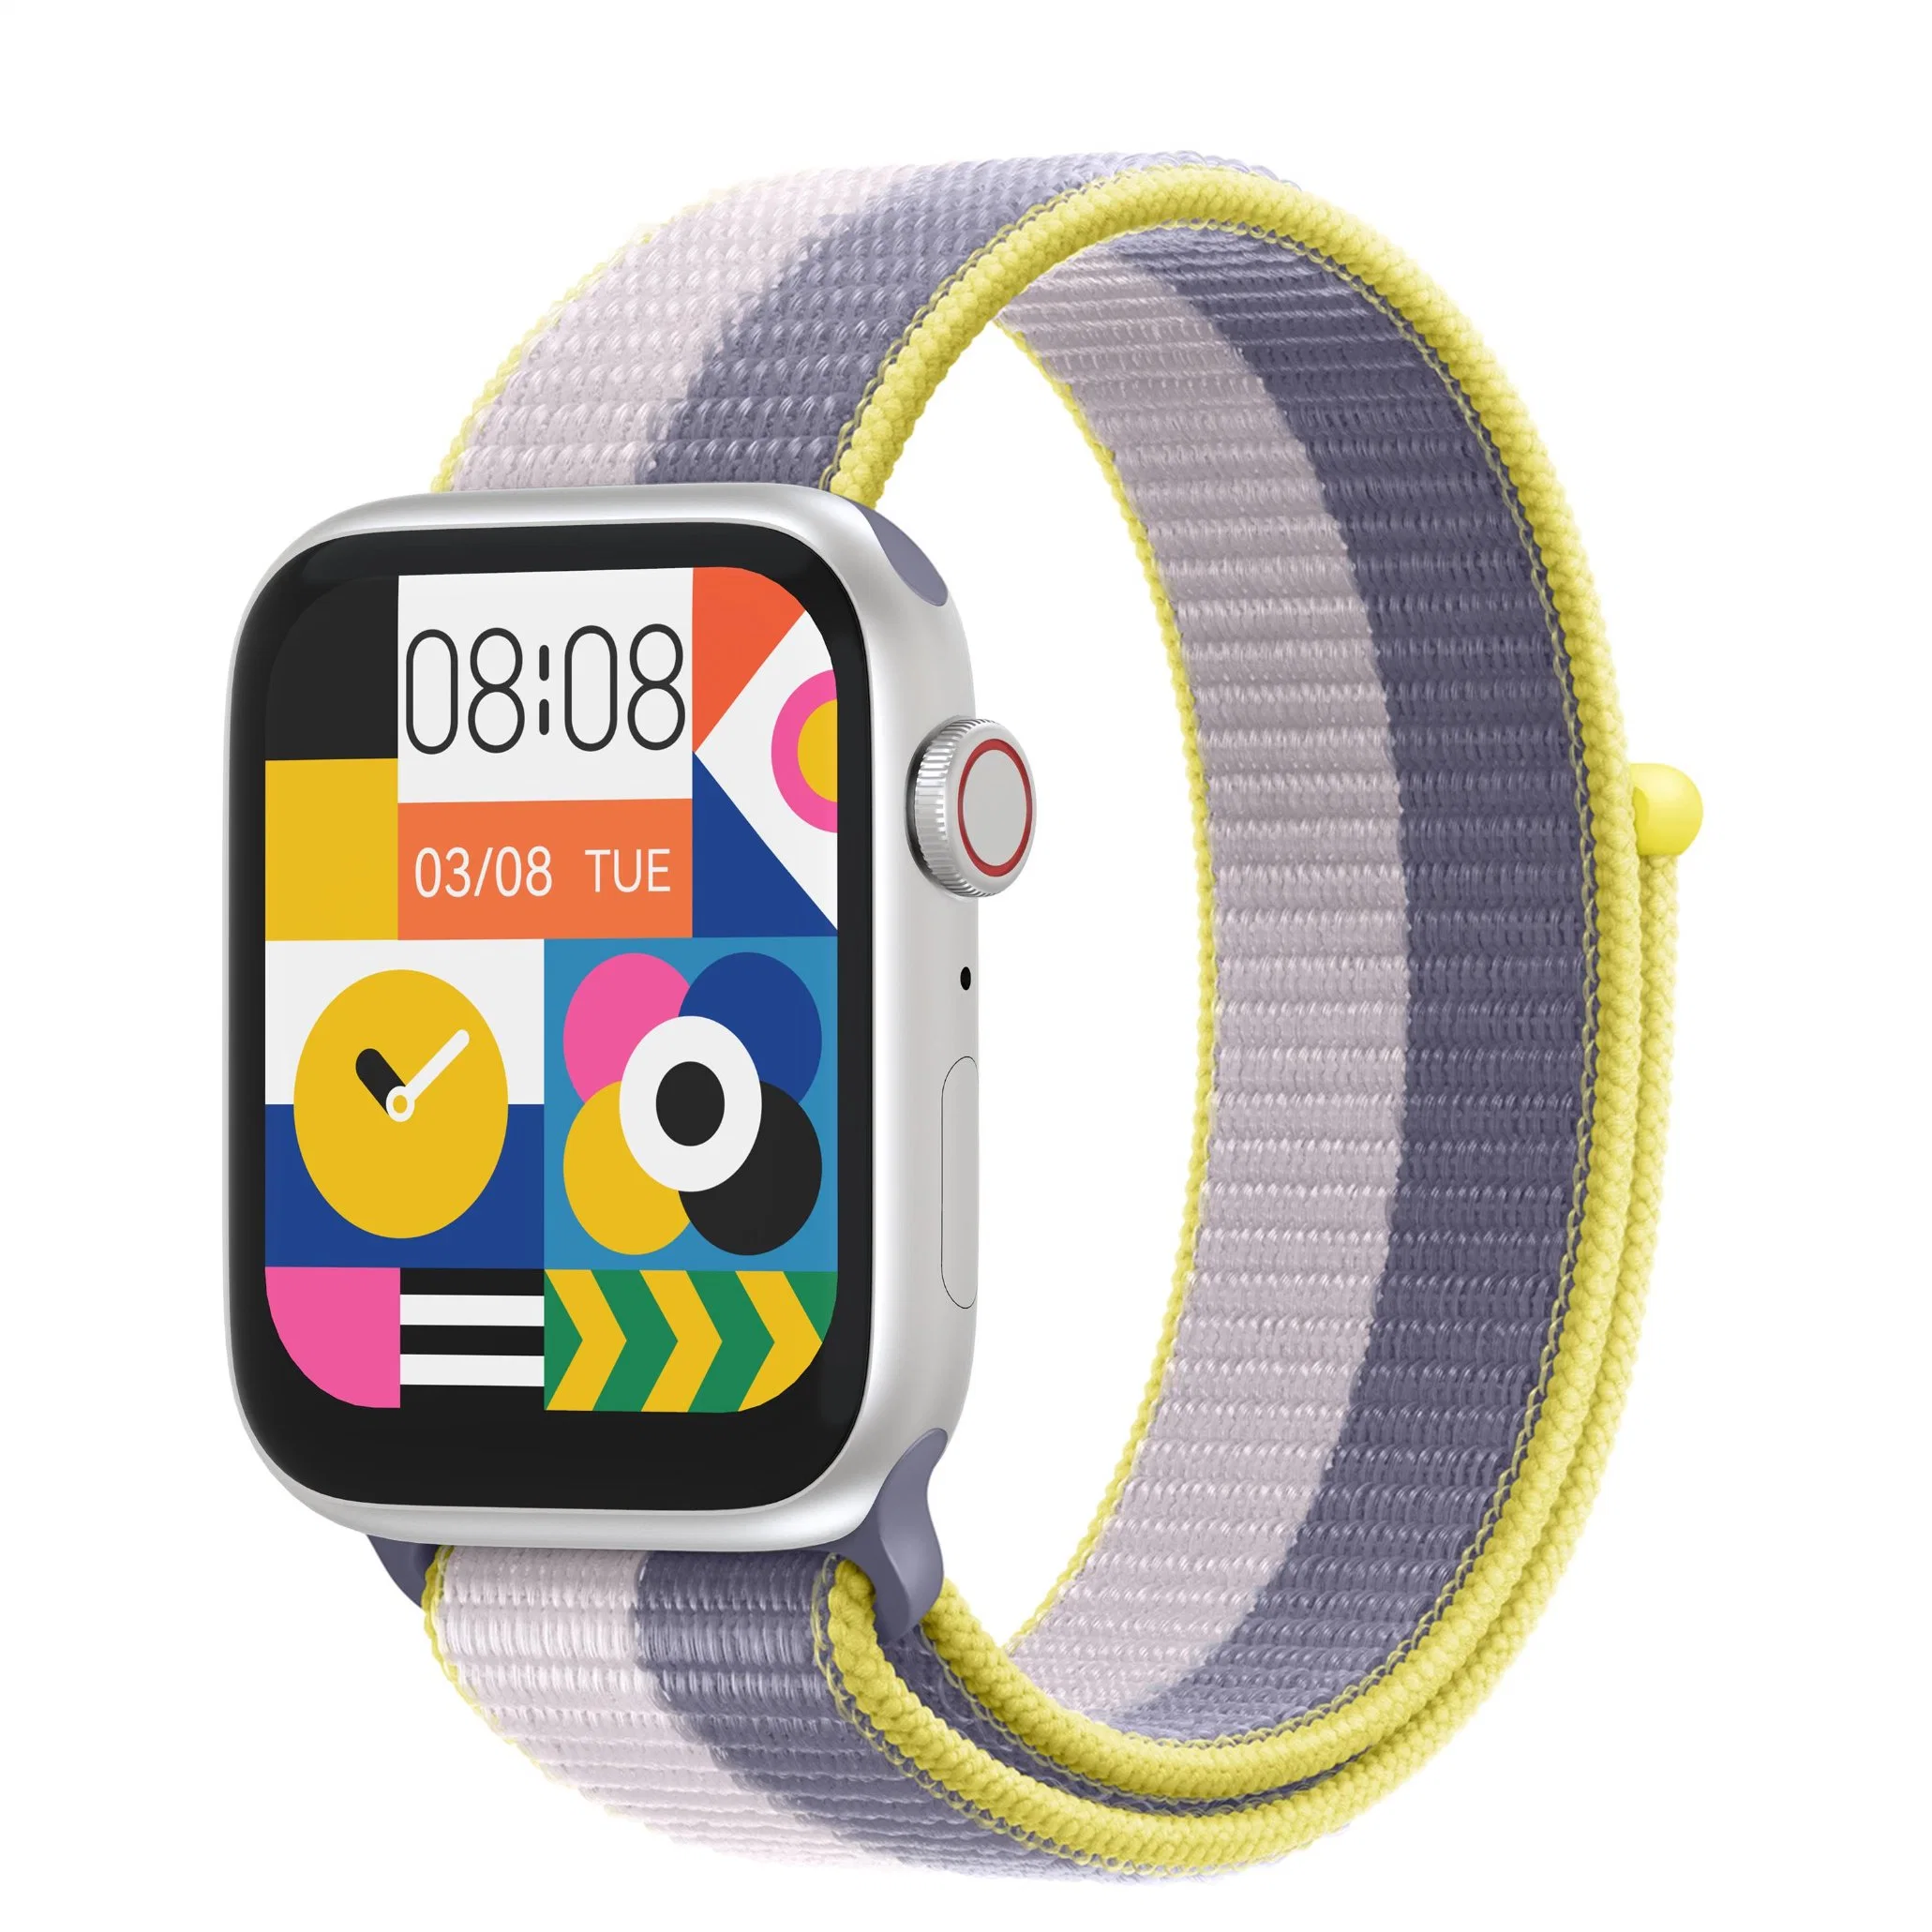 Tragbare Geschenkuhr Bequem Tragen Armband Uhr Smart Tracker Bluetooth Fitness Smartwatch